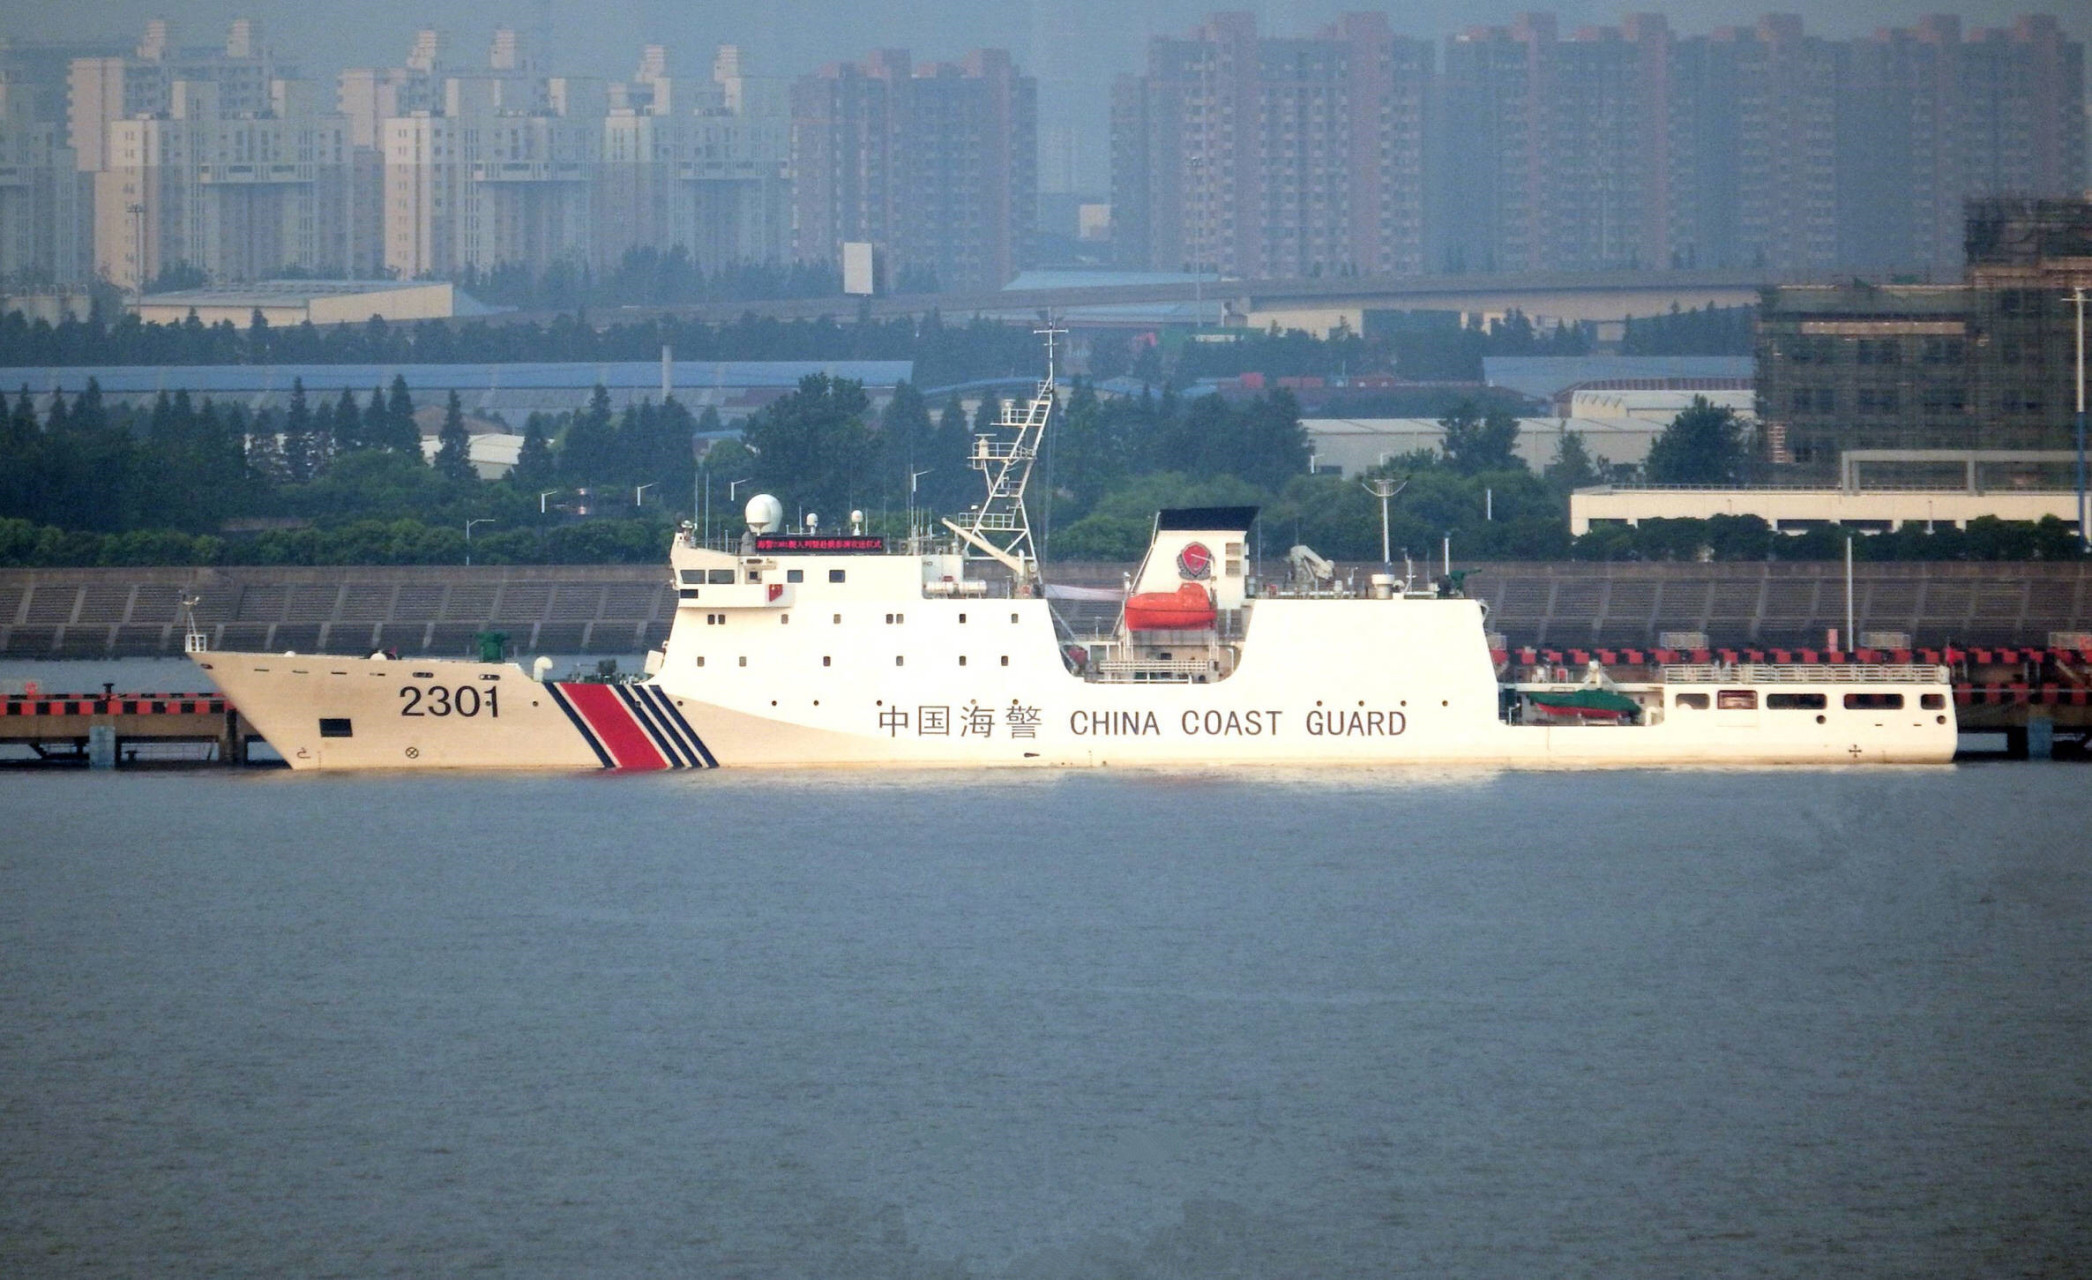 中国海警2301号海警船,近日已经进入日本海海域进行巡航执法!